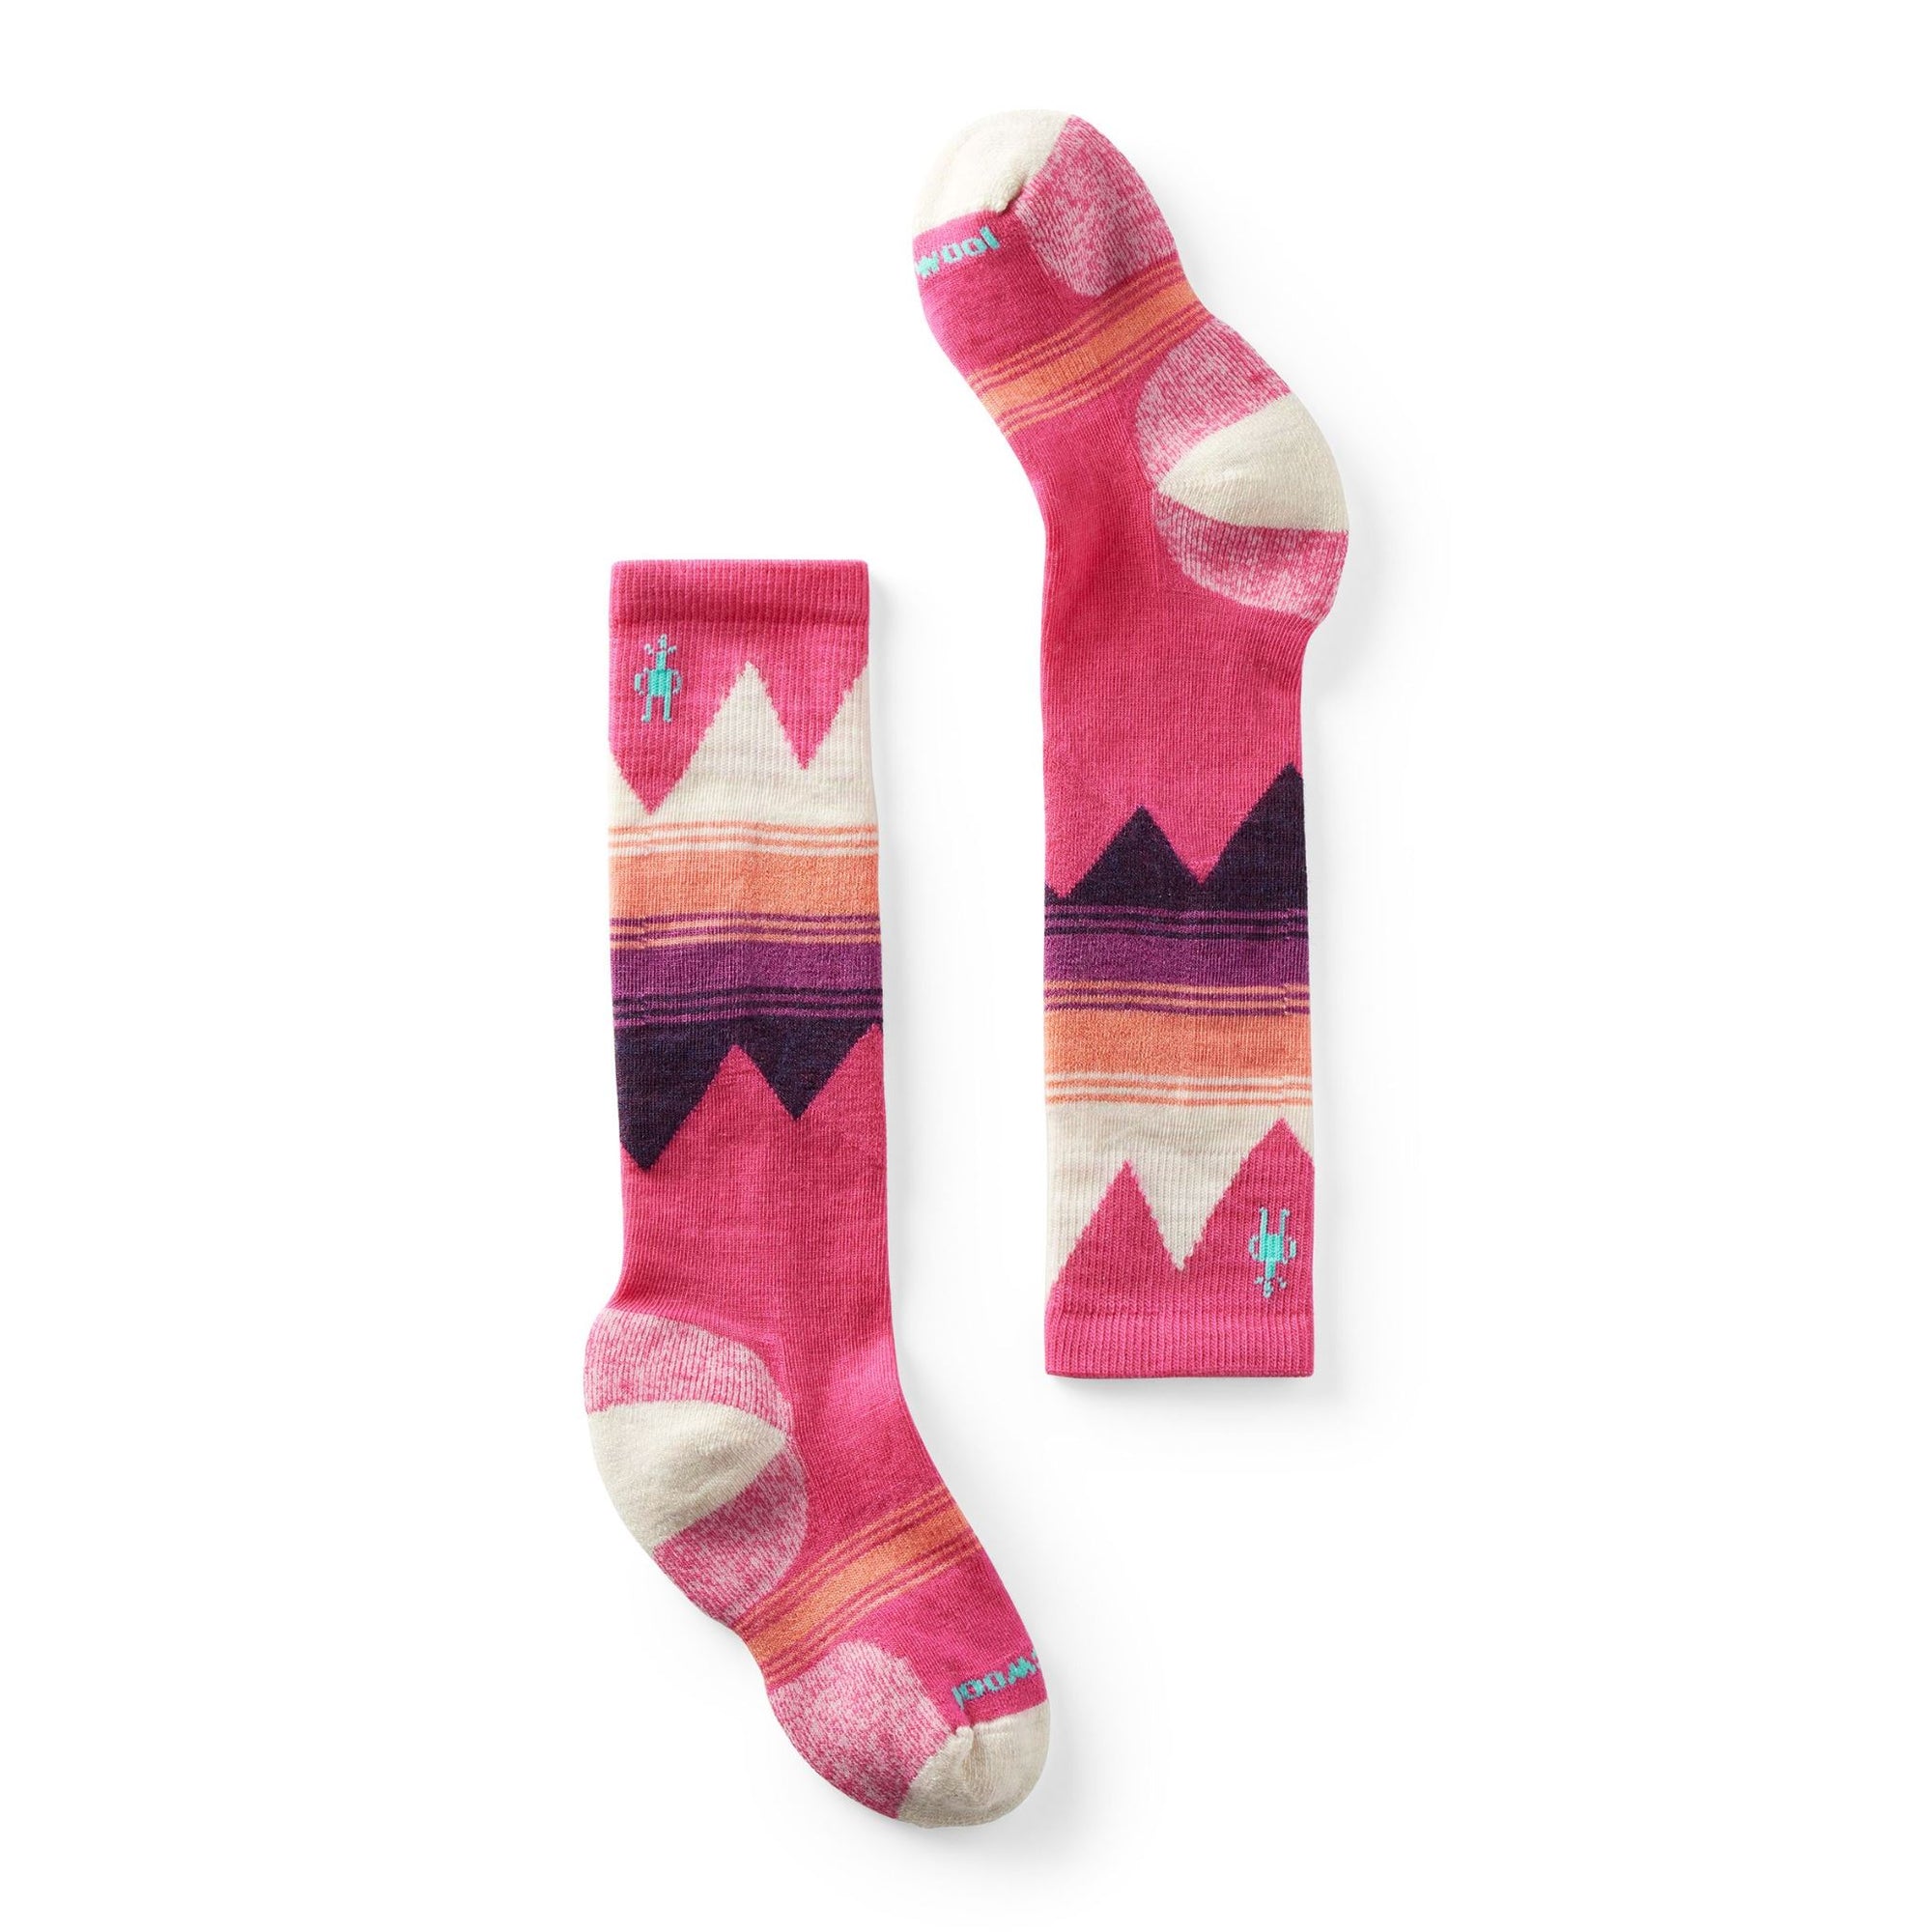 Kids Smartwool Ski Light Cushion Socks - Power Pink Socks Smartwool XS - (6-8.5US / 22-25EU) 